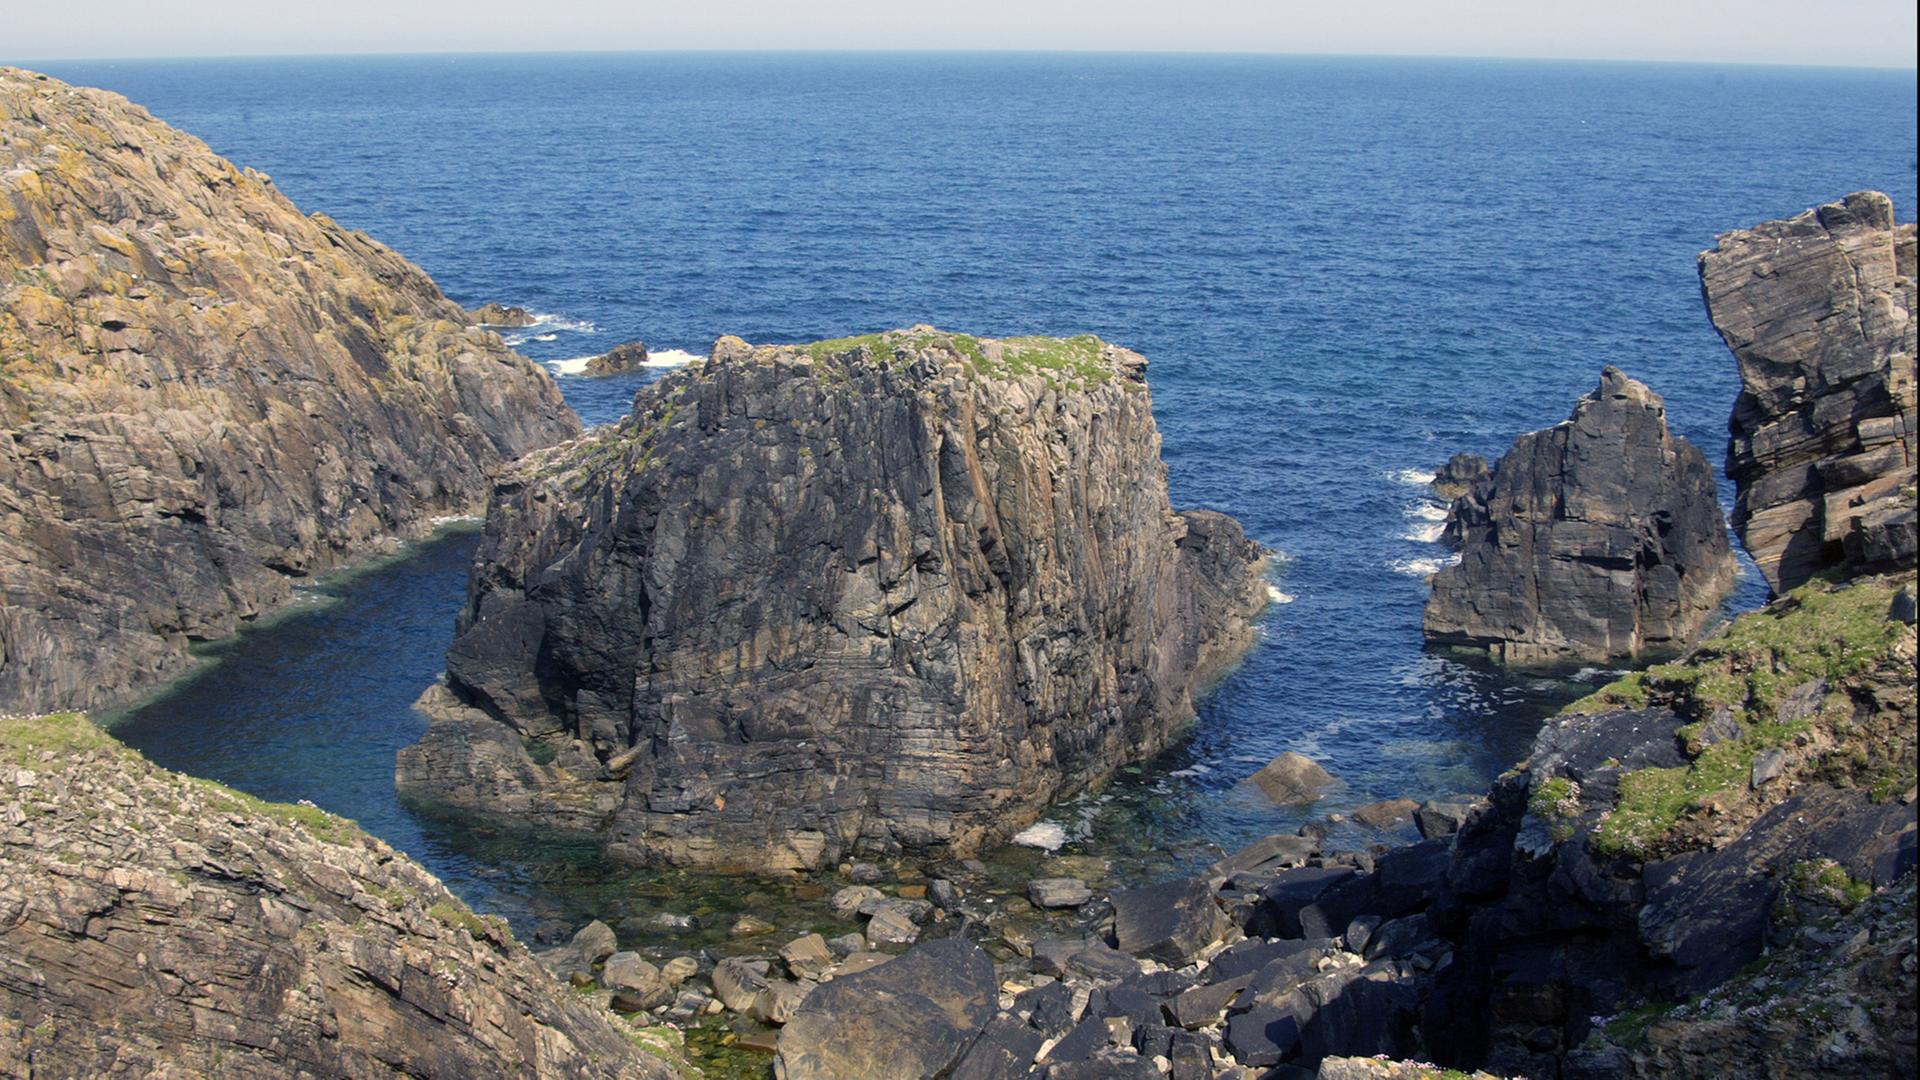 Schottland: Isle of Lewis - Sie gehört zu den Äußeren Hebriden, die vor der Nordwestküste Schottlands im Atlantik liegen. Die Hauptstadt ist Stornoway.